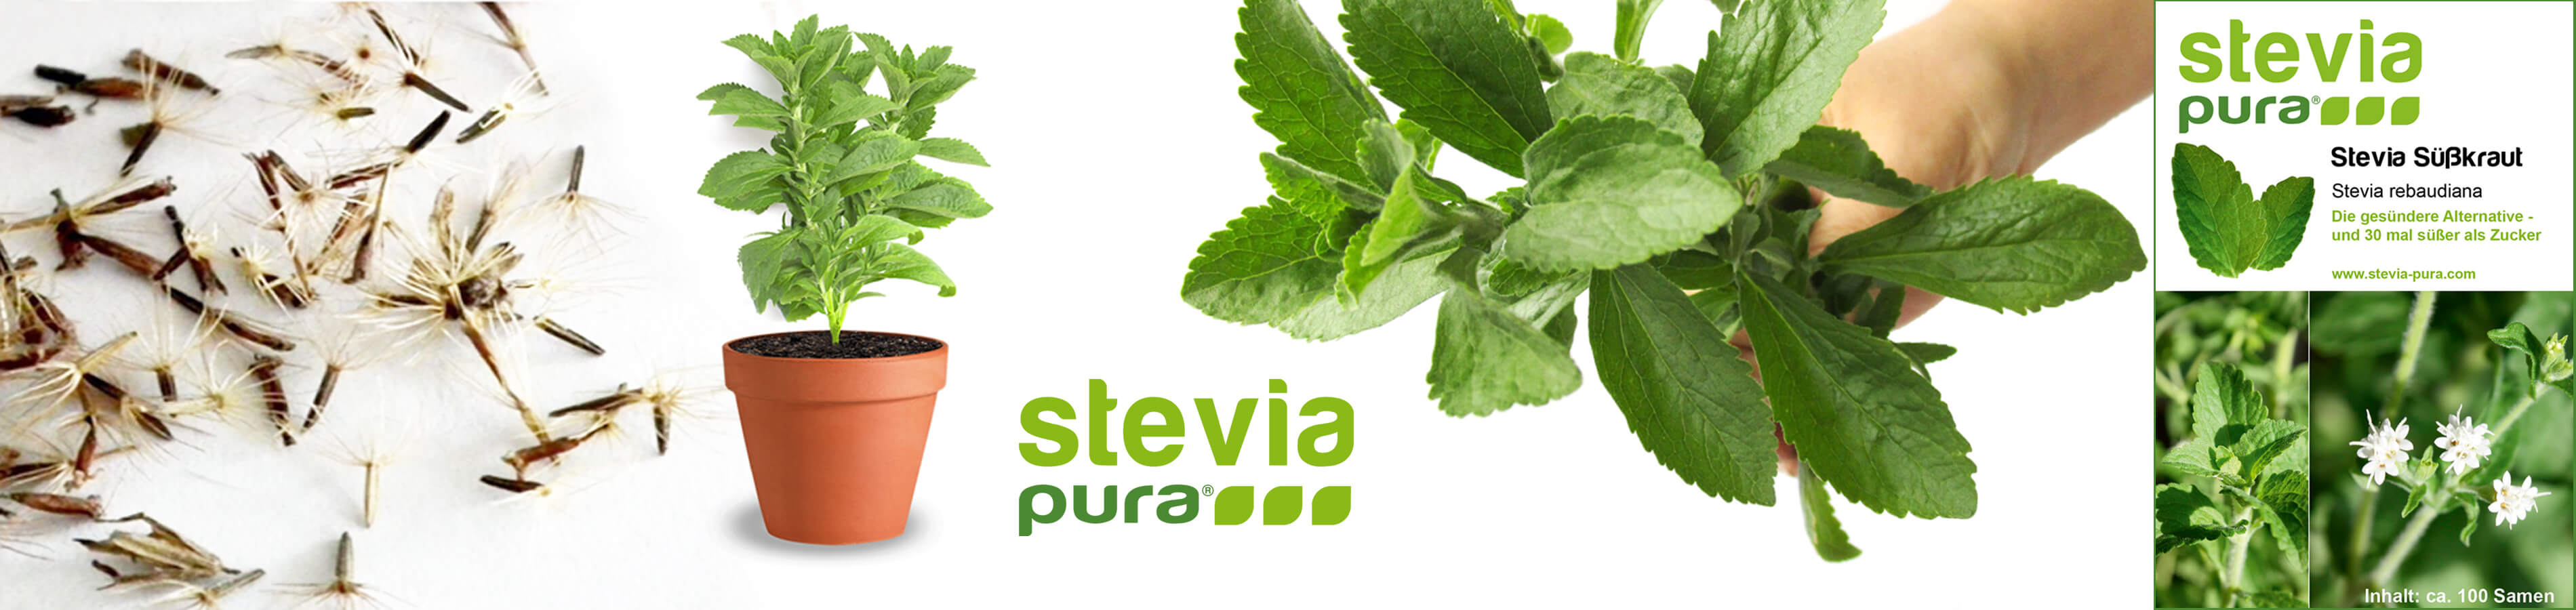 Stevia Samen Steviasamen Stevia Saatgut Stevia rebaudiana...